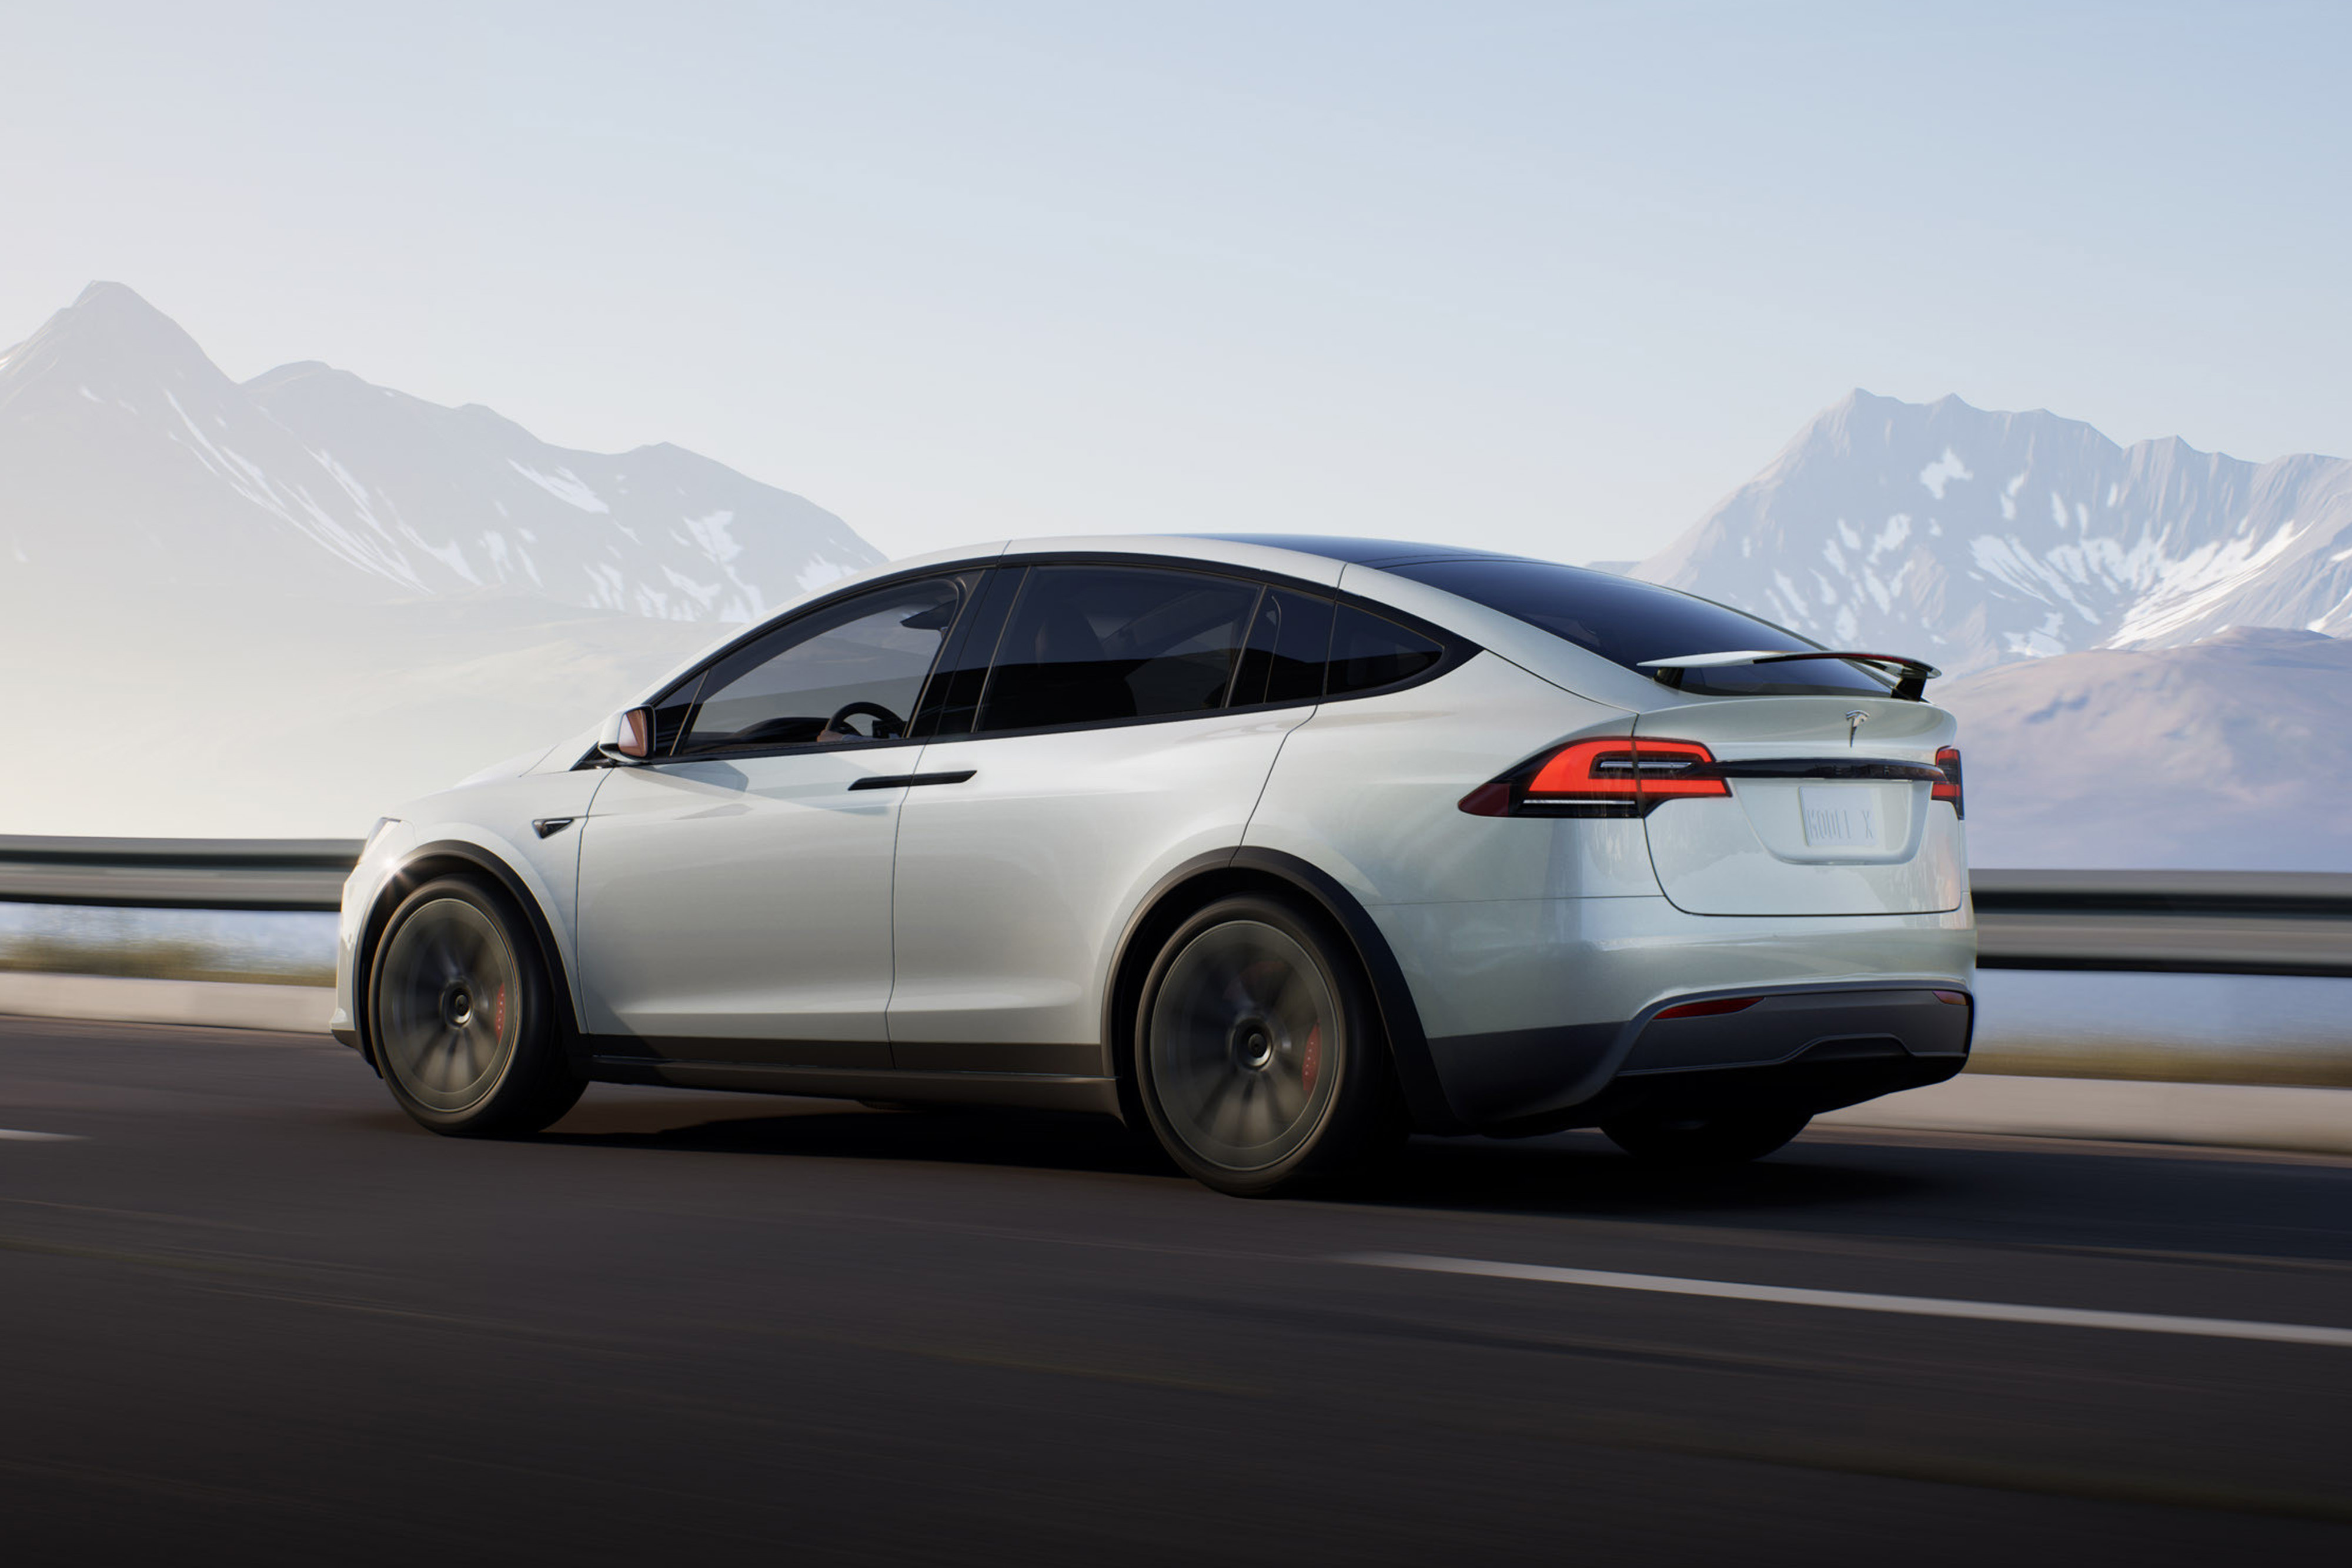 تسلا مدل ایکس 2021 / Tesla Model X سفید در جاده از نمای پشت